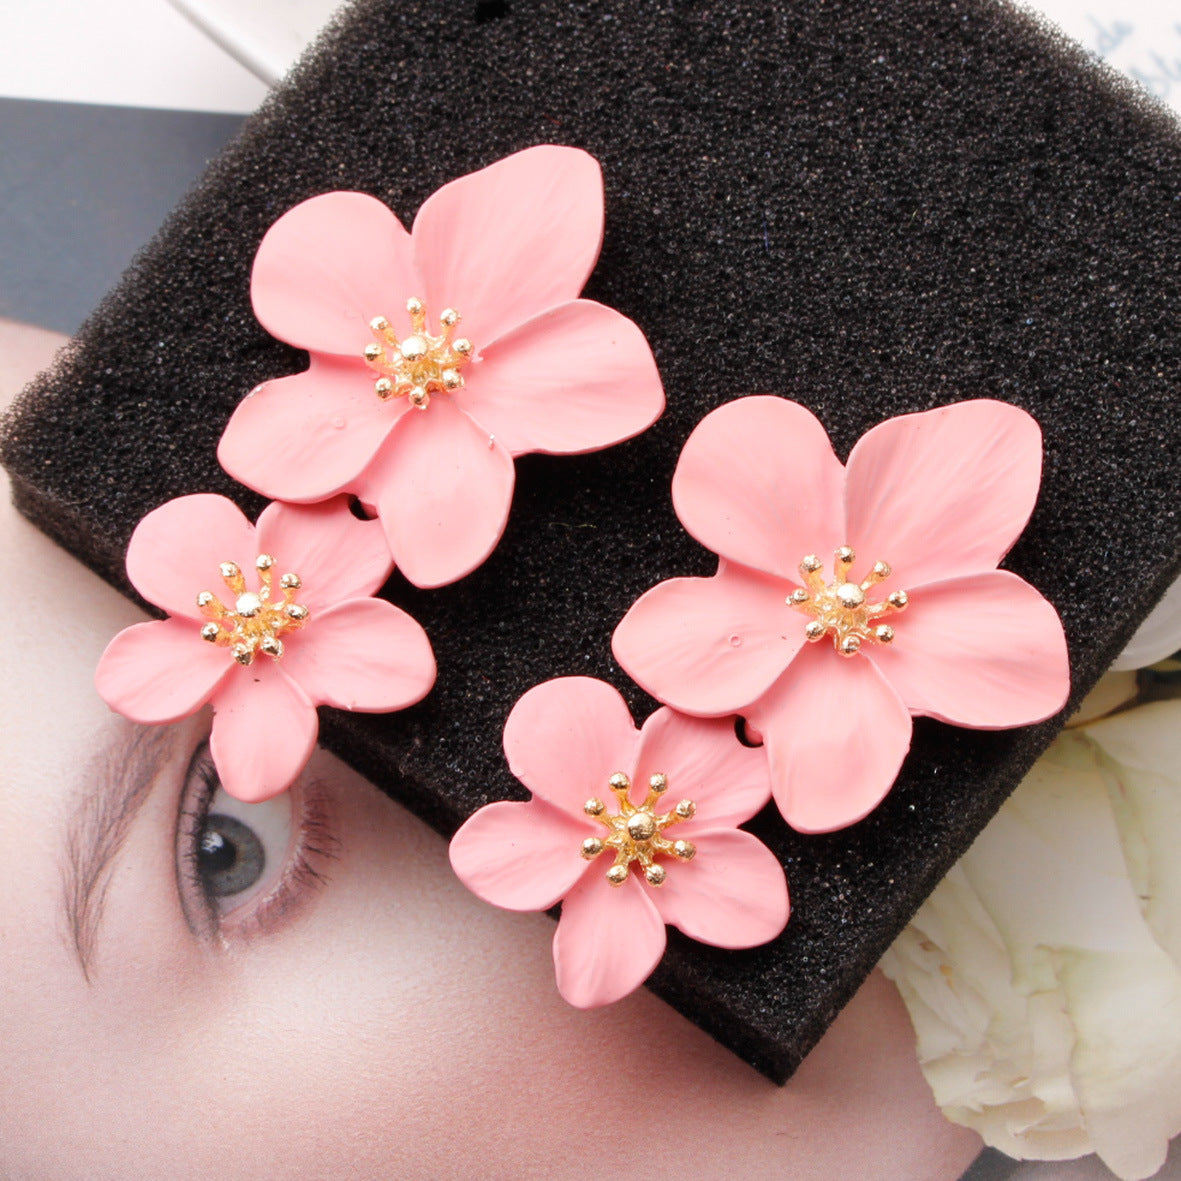 Sandra Double Flower Earrings